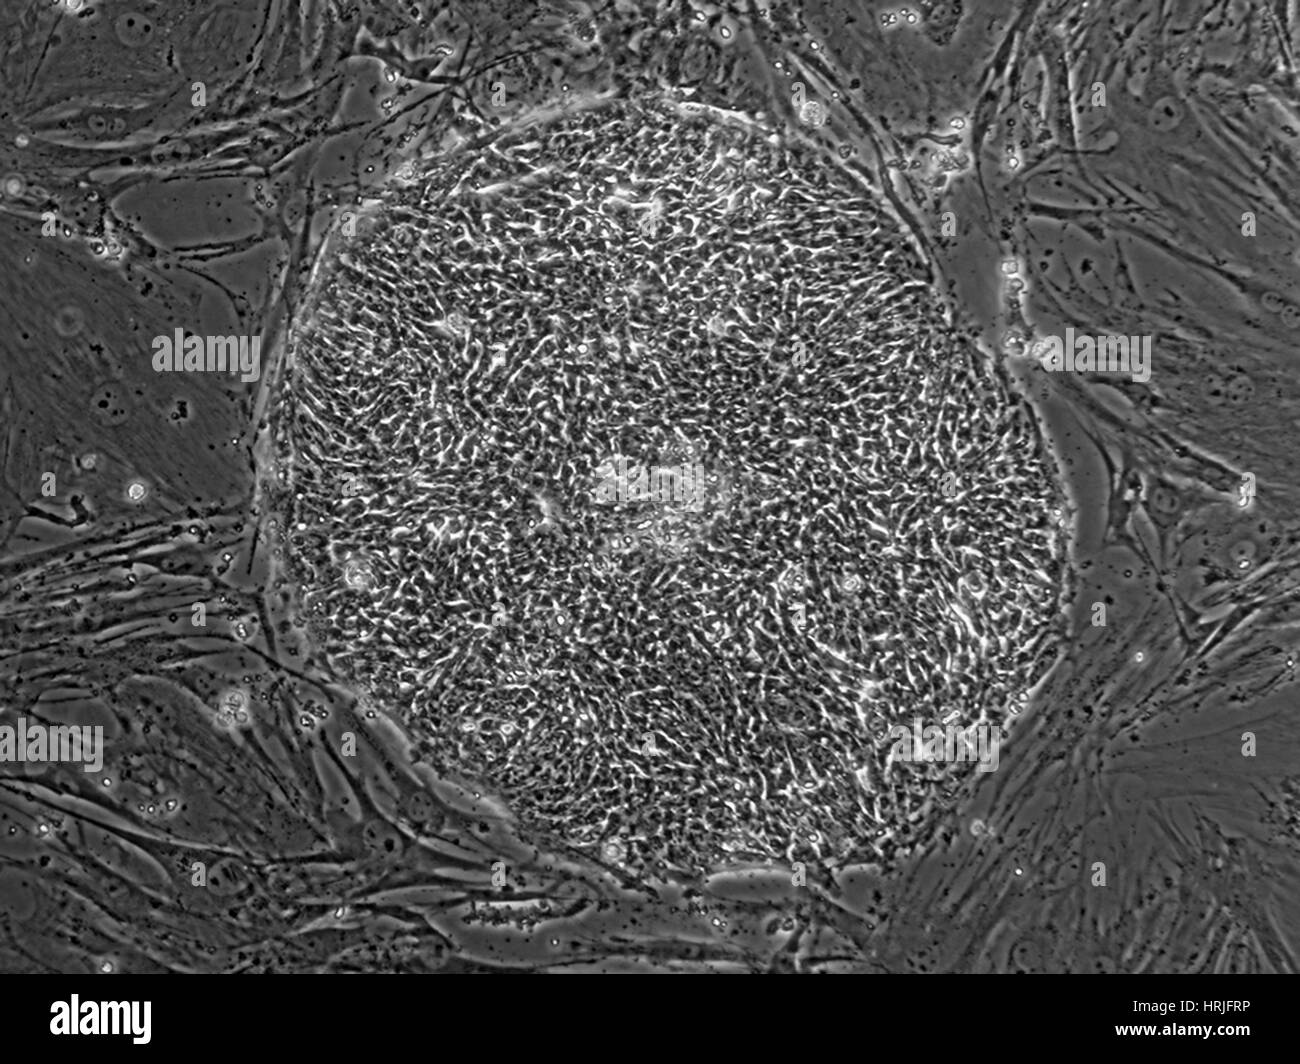 Human Embryonic Stem Cell Line SA02 Stock Photo